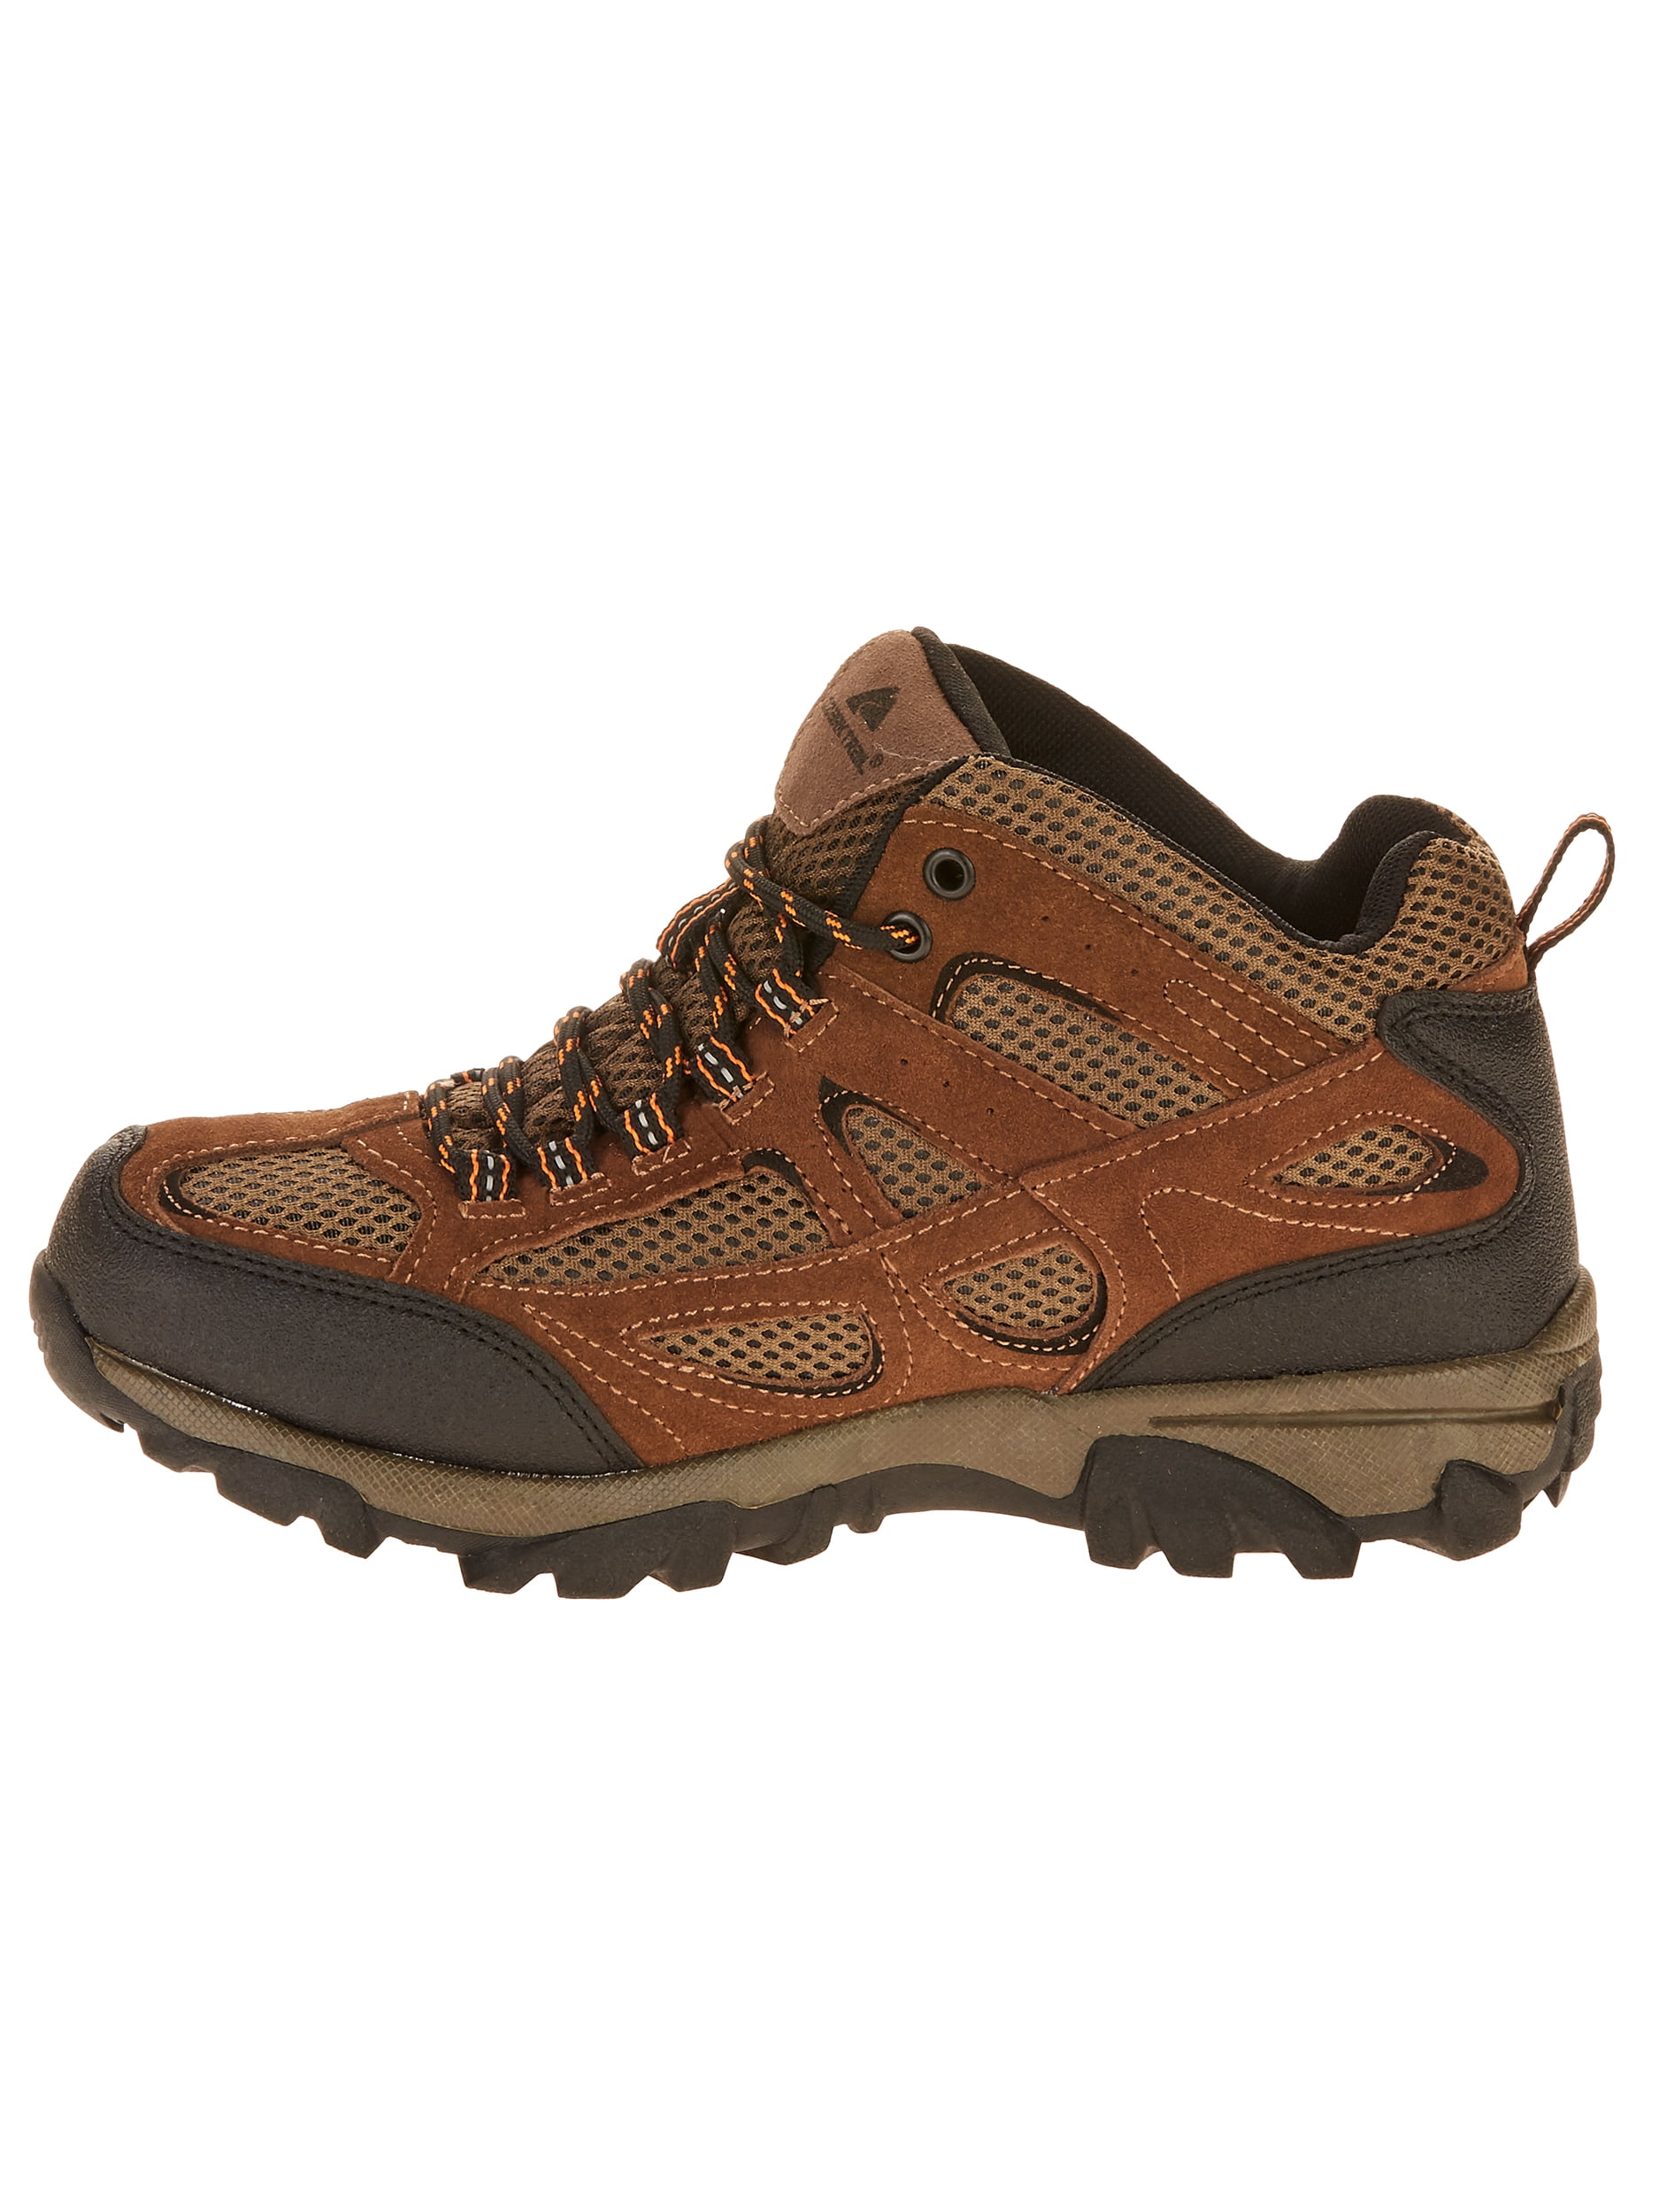 walmart ozark trail hiking boots